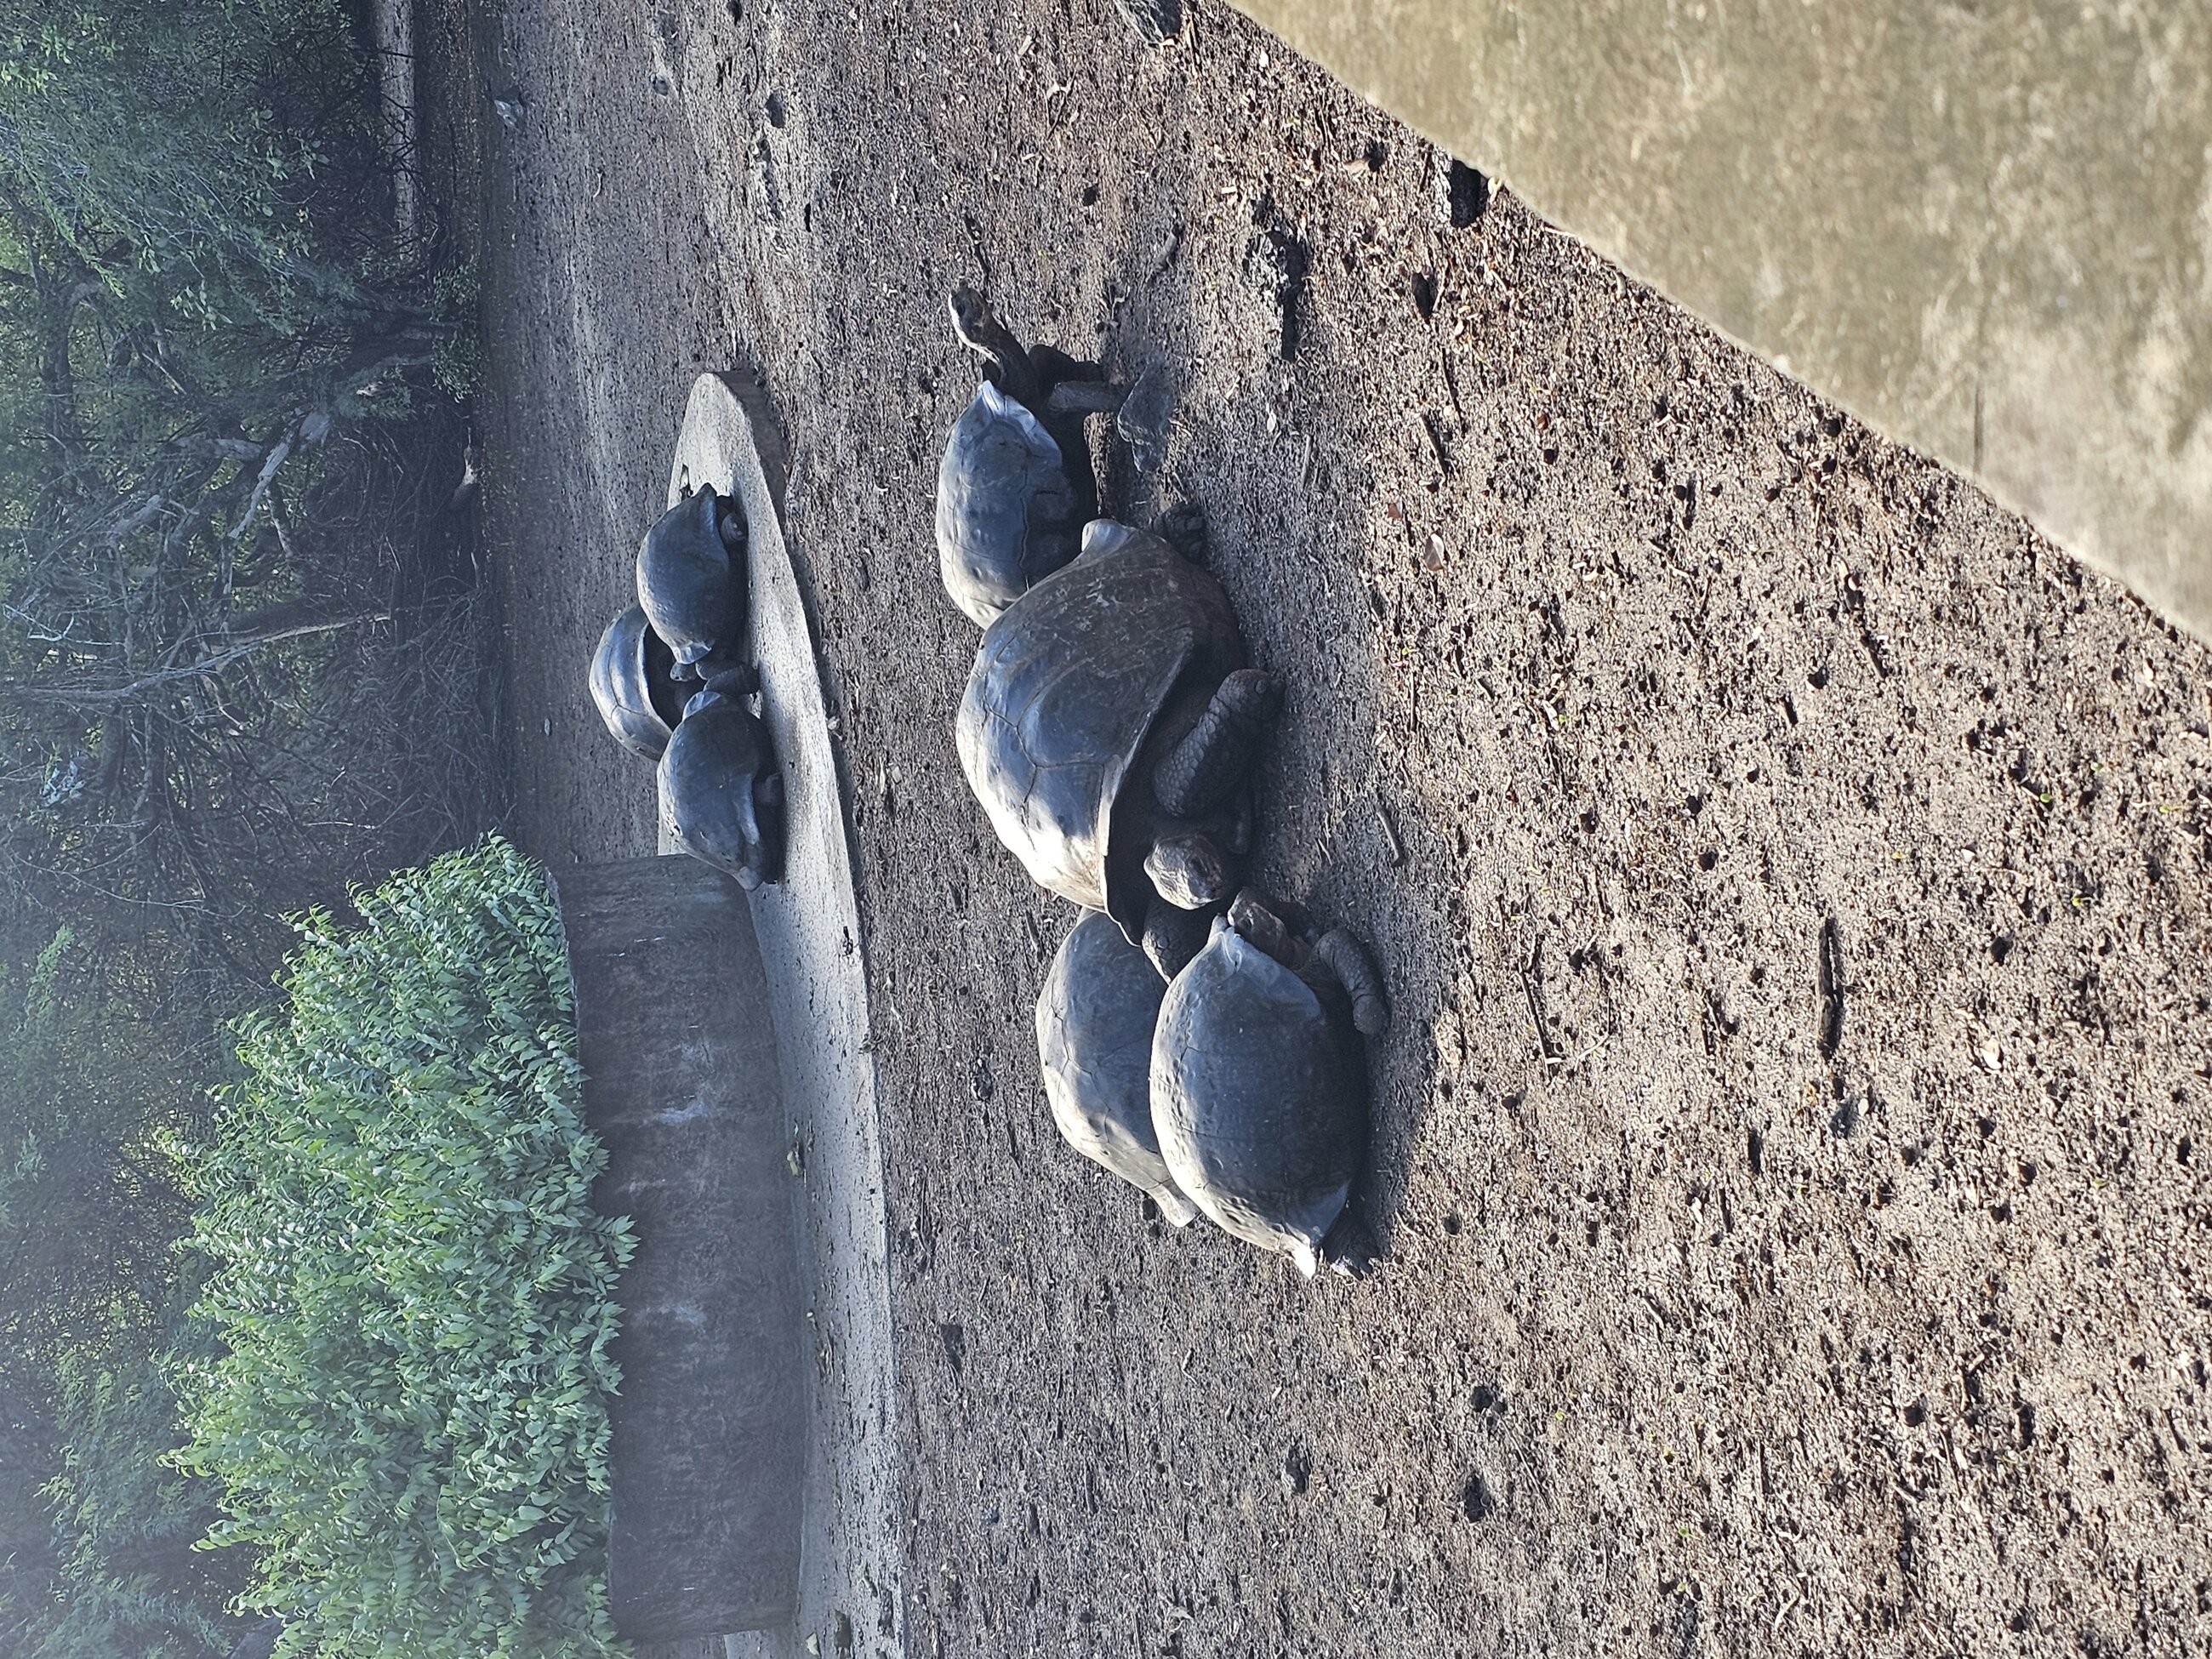 Tortoises at the Breeding Center